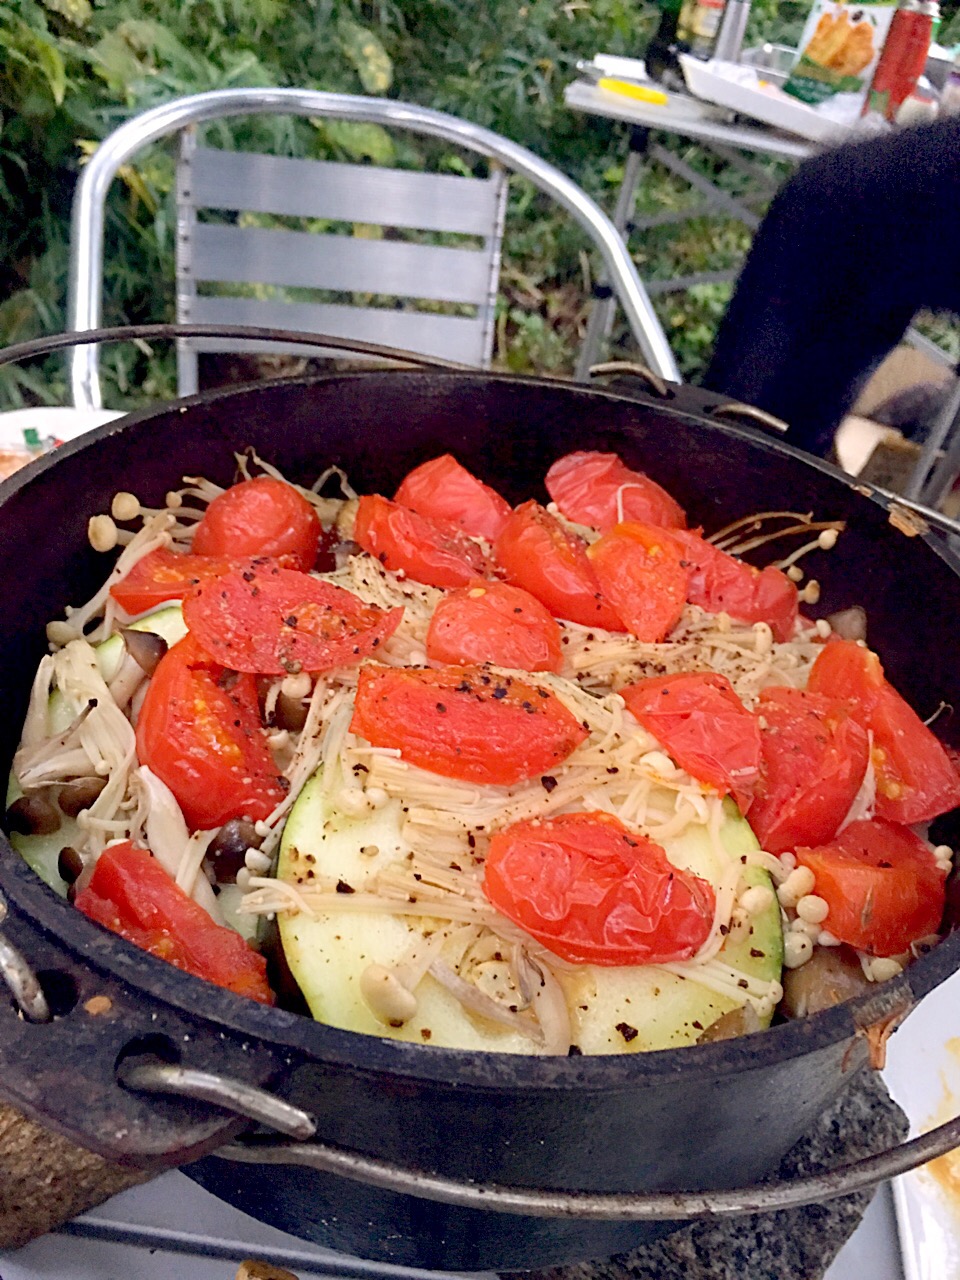 ジャンボズッキーニの輪切り、茄子、シメジ、エノキを入れた上から庭の完熟トマトを散らして 白ワイン、醤油、塩、胡椒でシンプルに味付けました(⌒▽⌒)#醤油 #ダッチオーブン #パンにもごはんにも